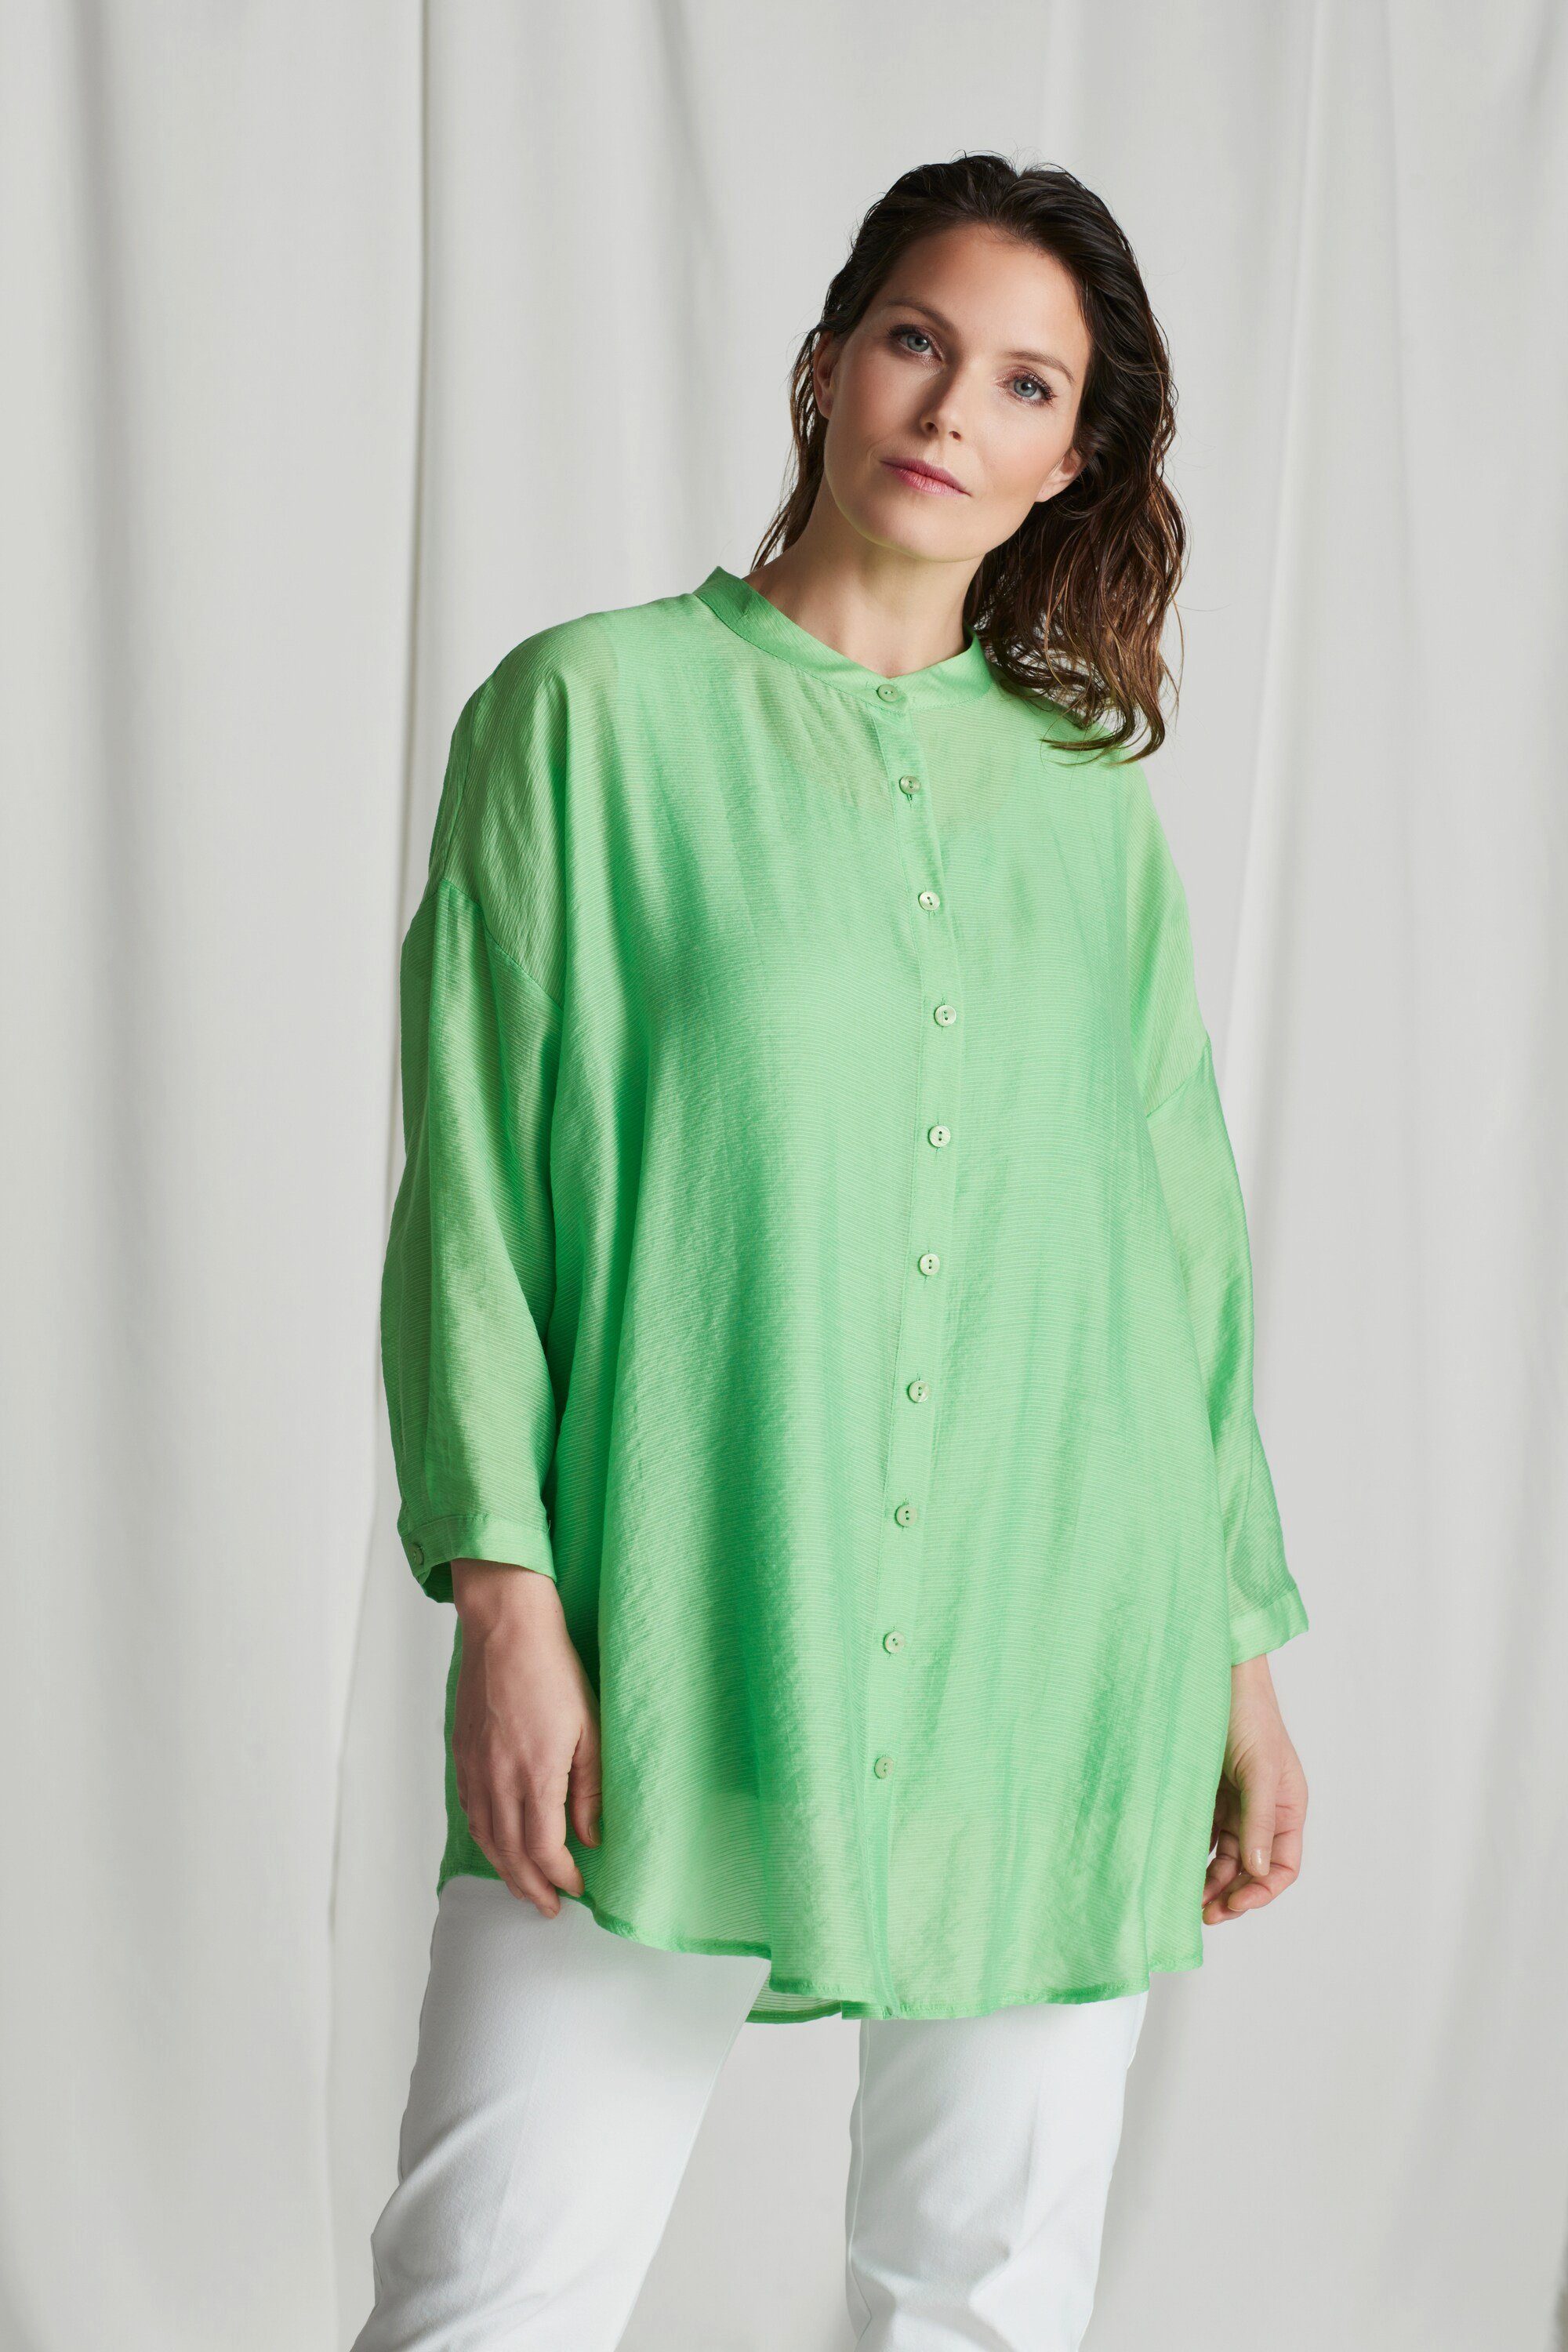 Transparente Bluse online kaufen | OTTO